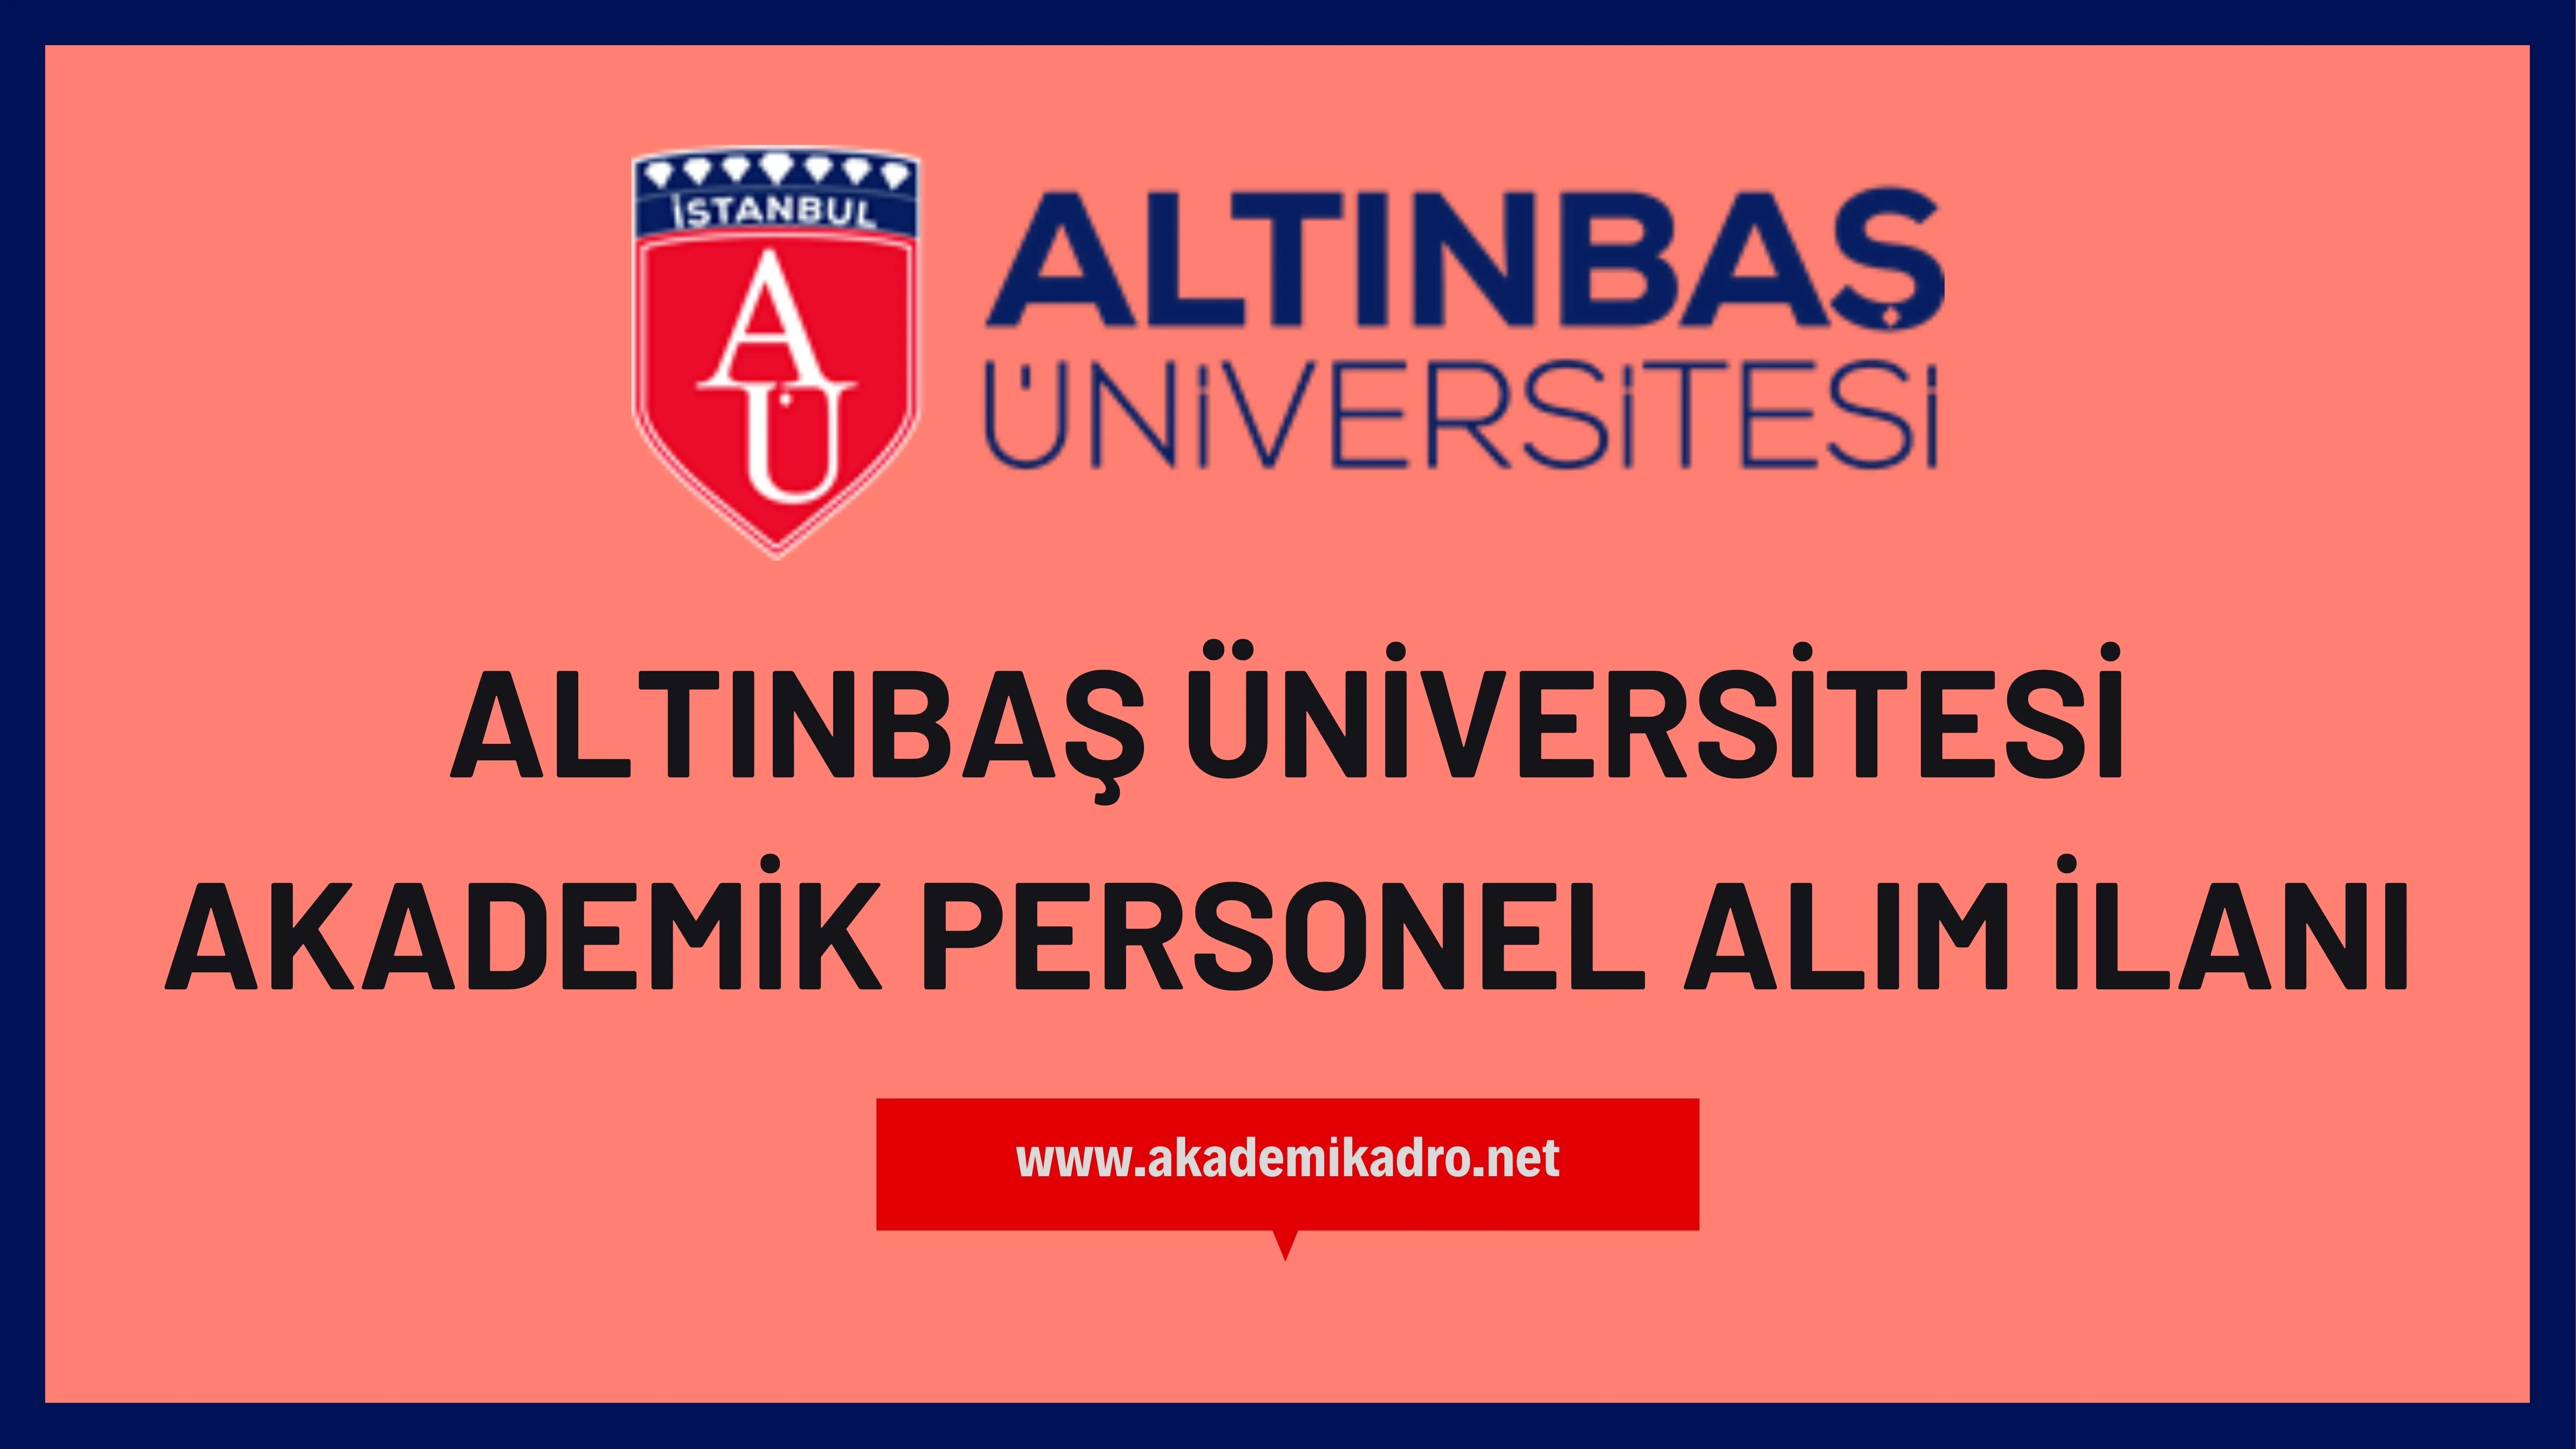 Altınbaş Üniversitesi birçok alandan 17 Akademik personel alacak. Son başvuru tarihi 26 Haziran 2023.